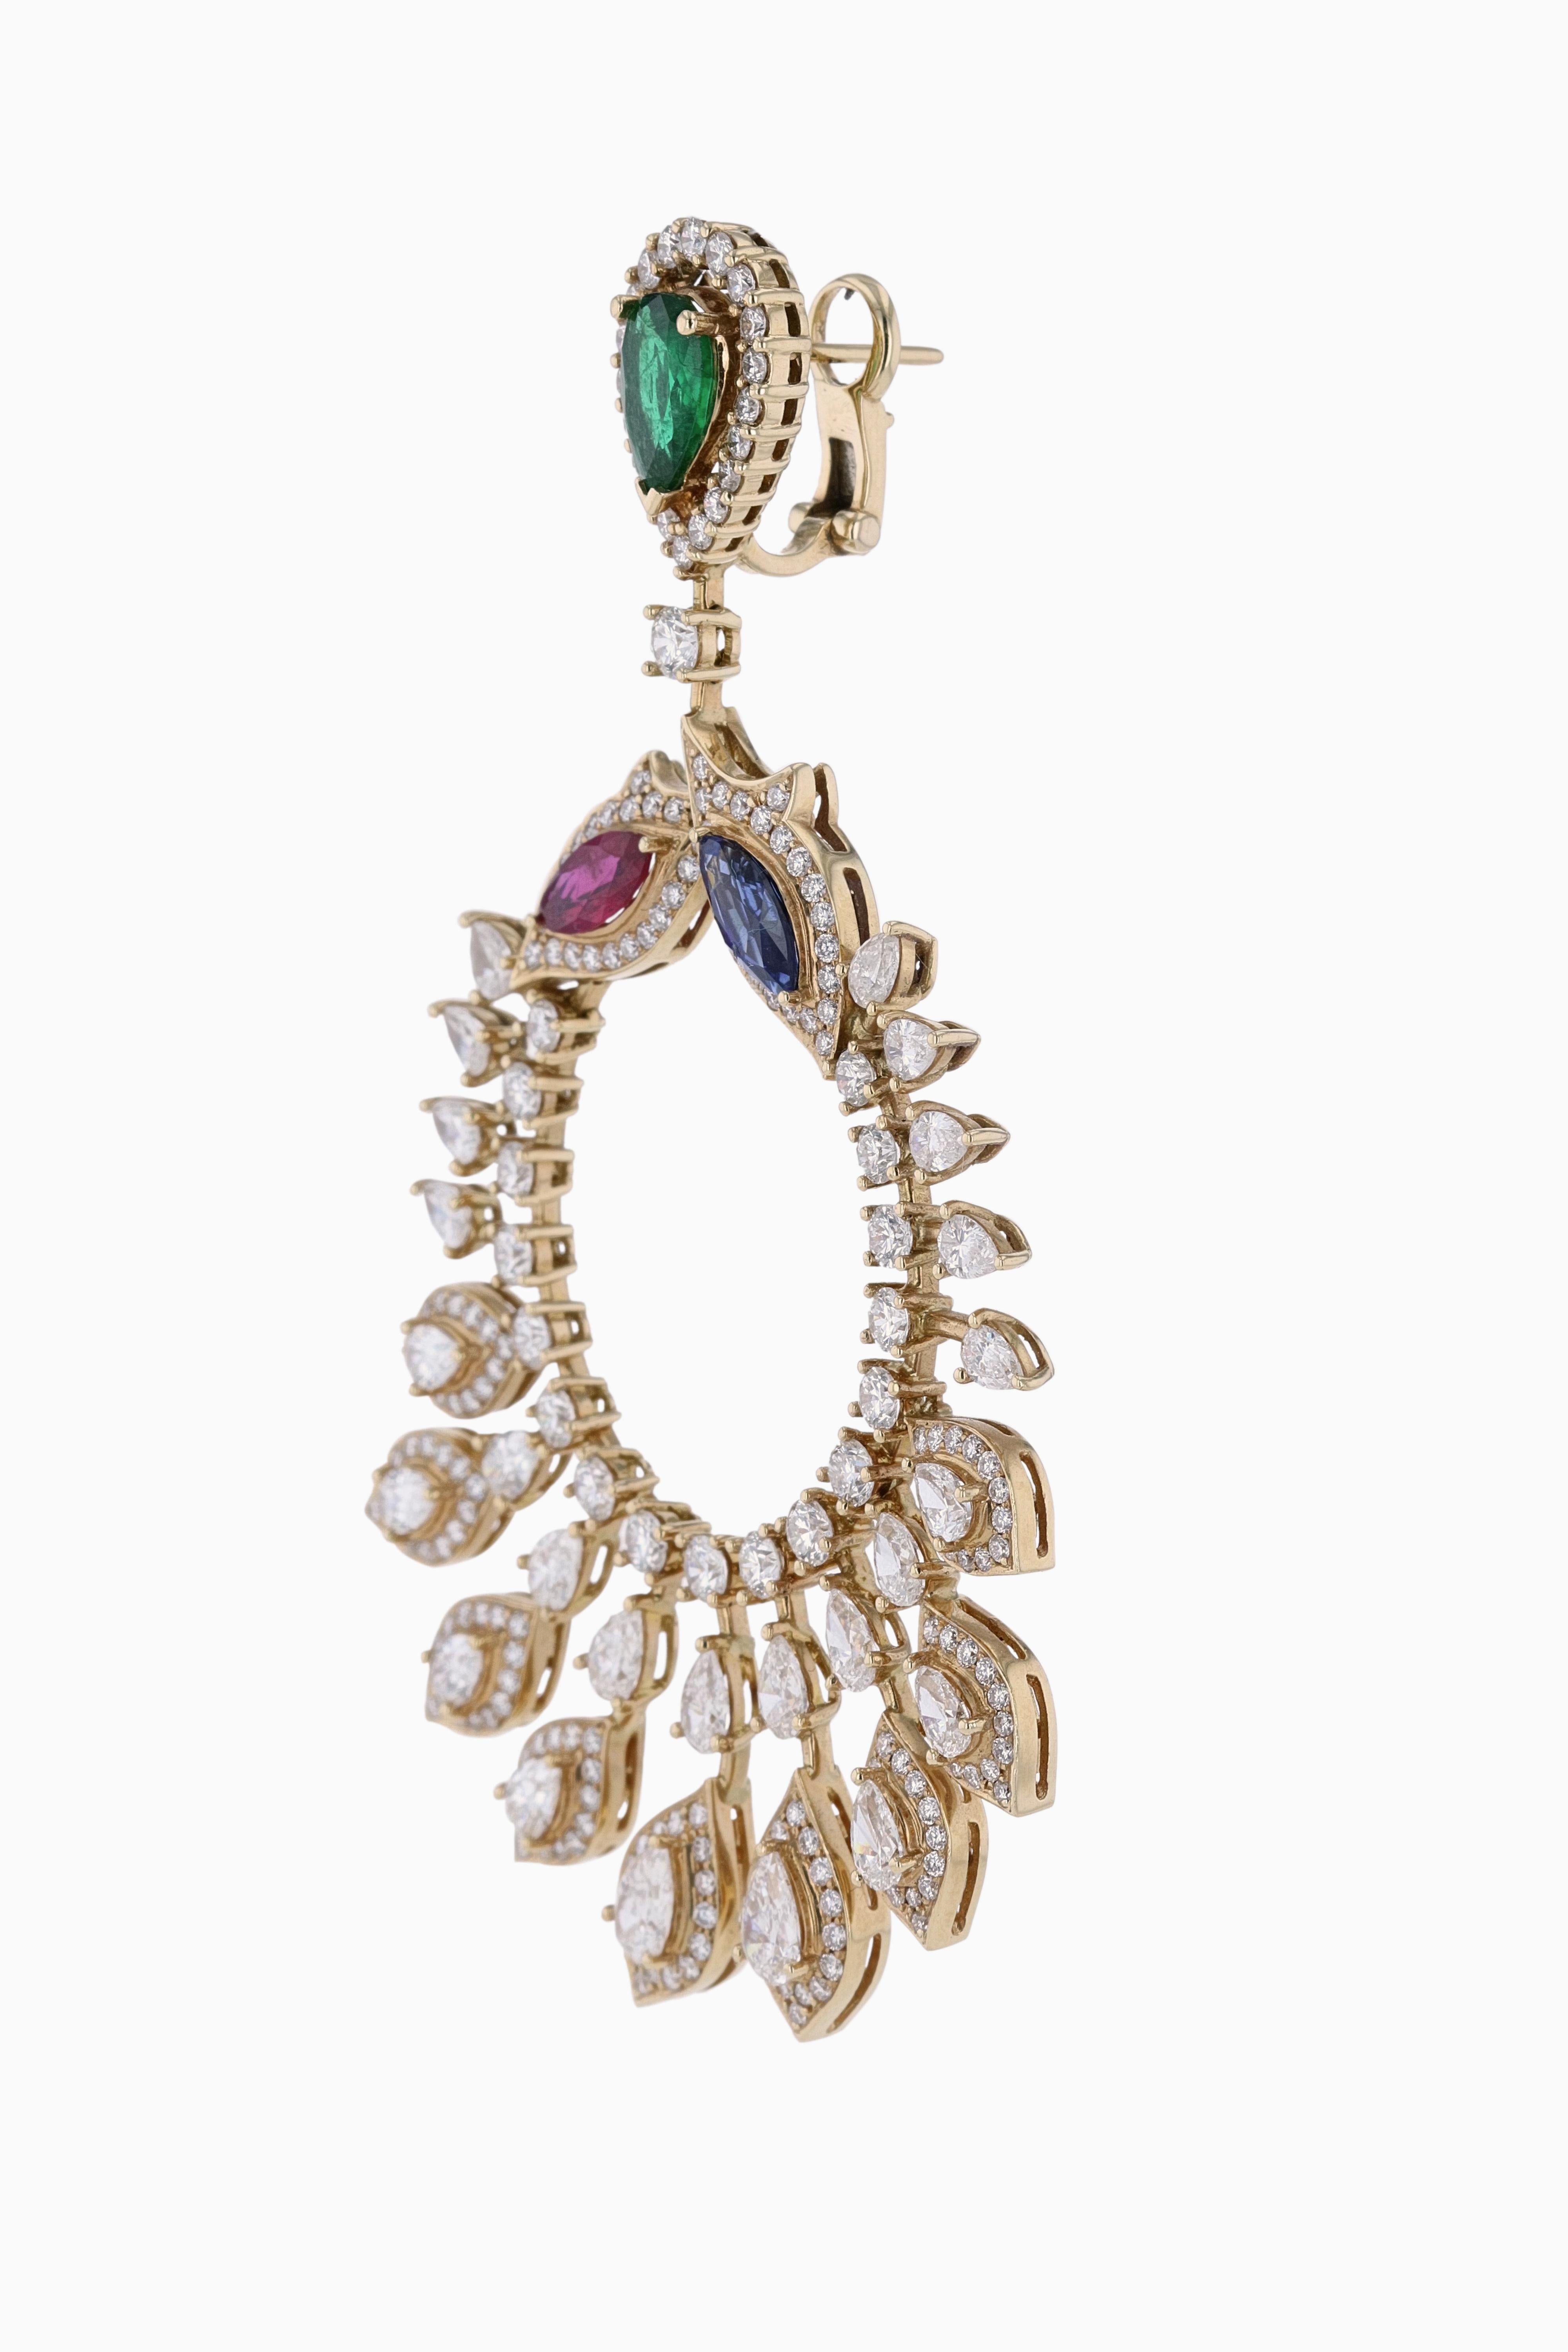 Amwaj Jewelry Emerald, Sapphire and Ruby Chandelier Earrings in 18 Karat Gold For Sale 2